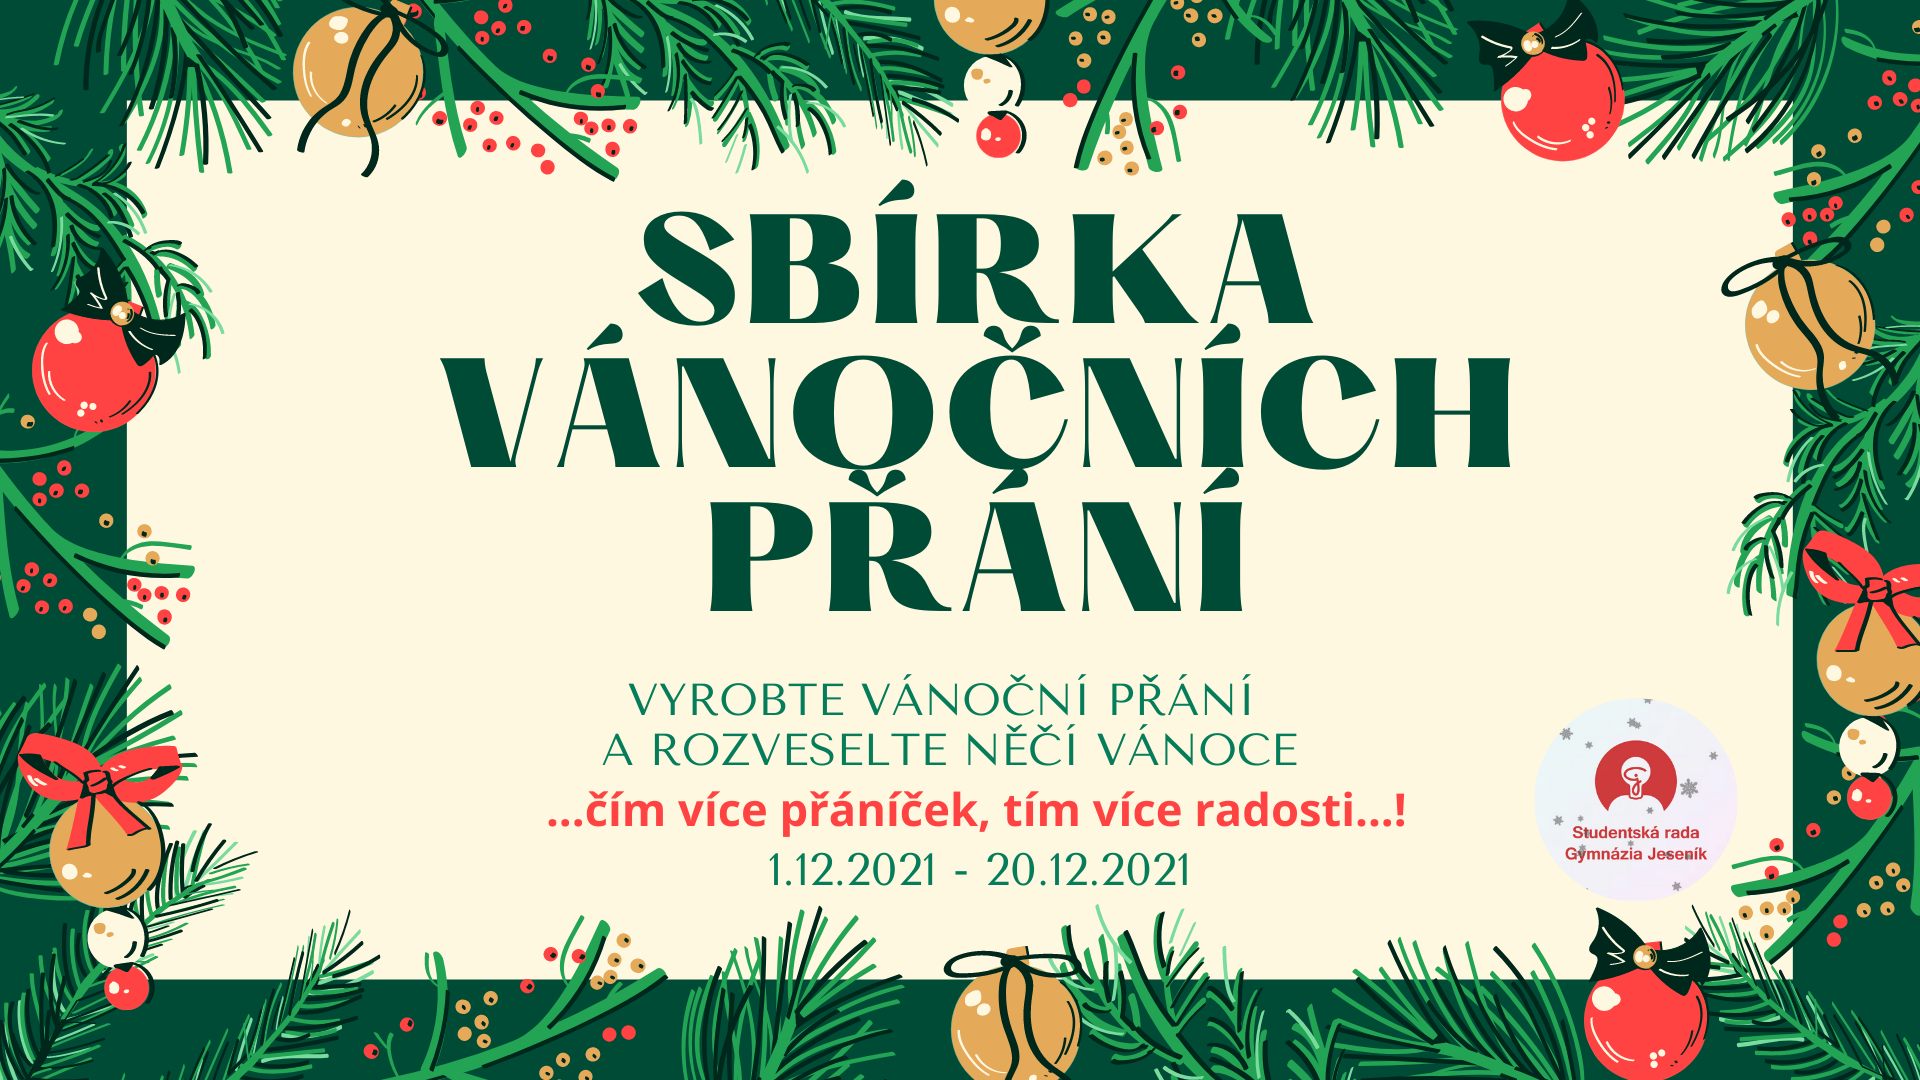 Featured image for “Sbírka vánočních přání”